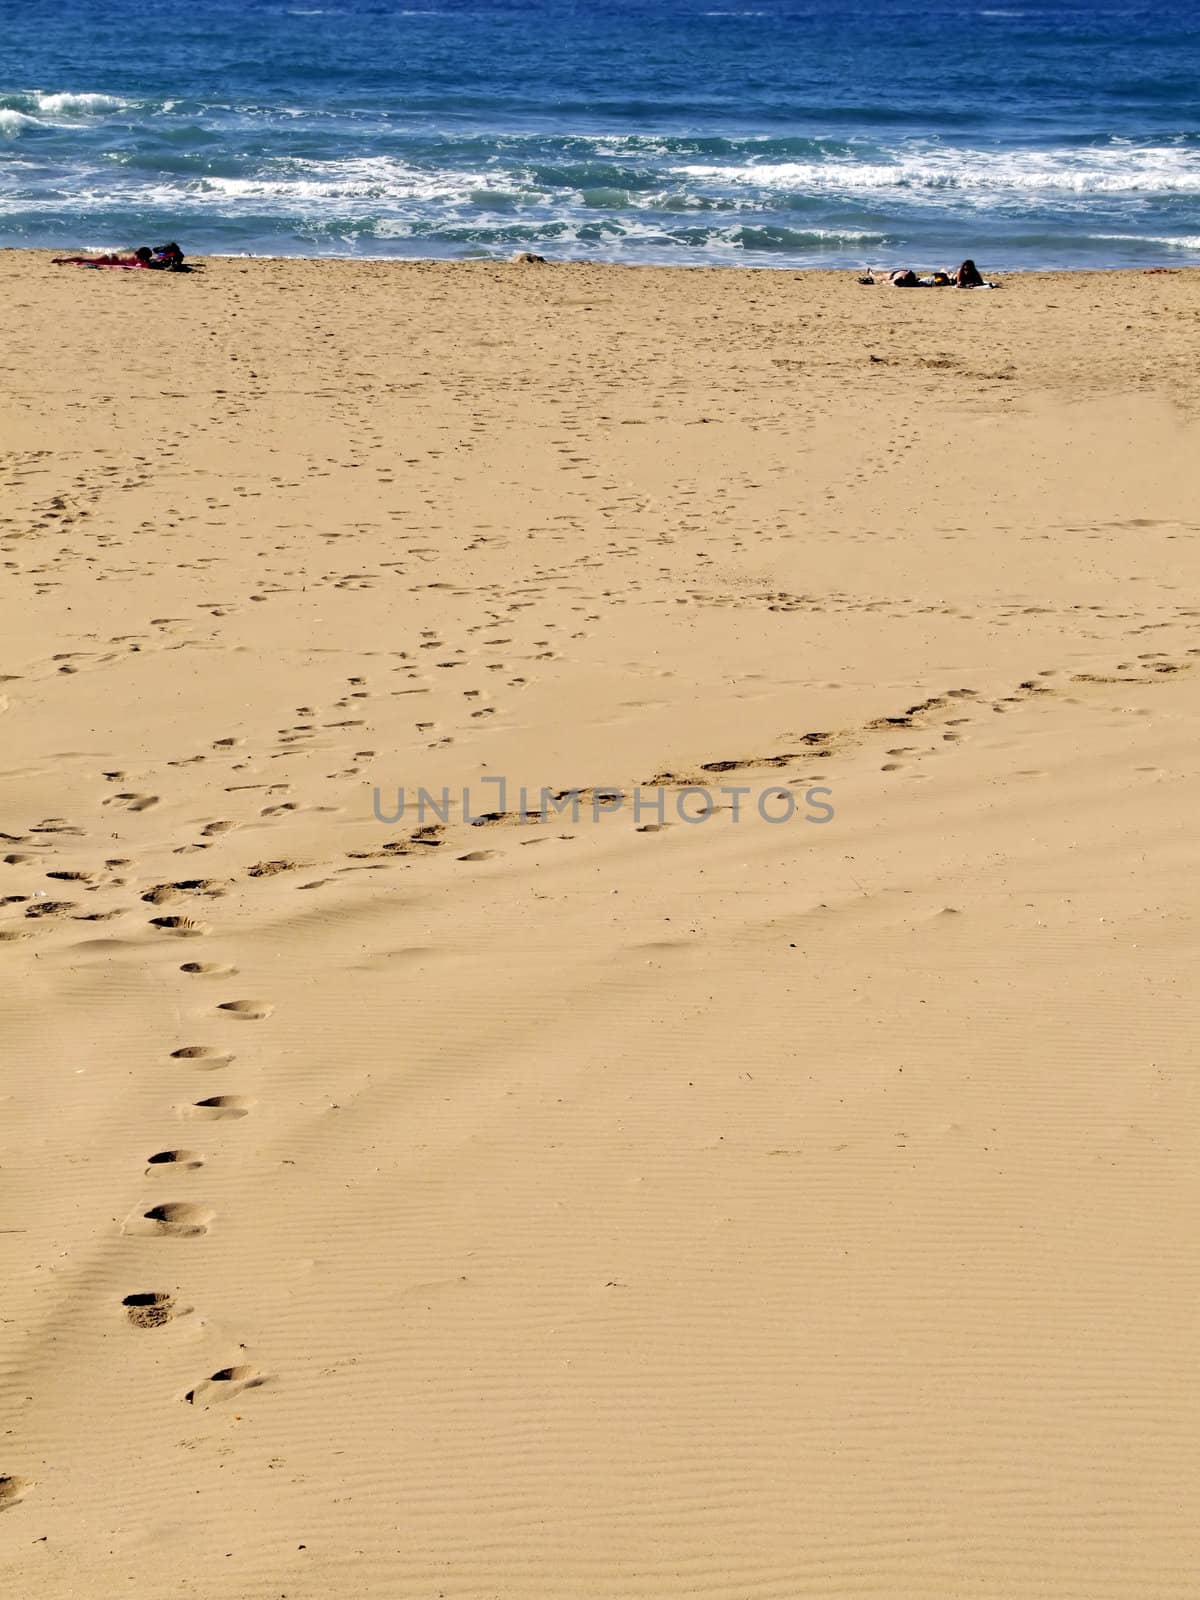 The Beach by PhotoWorks